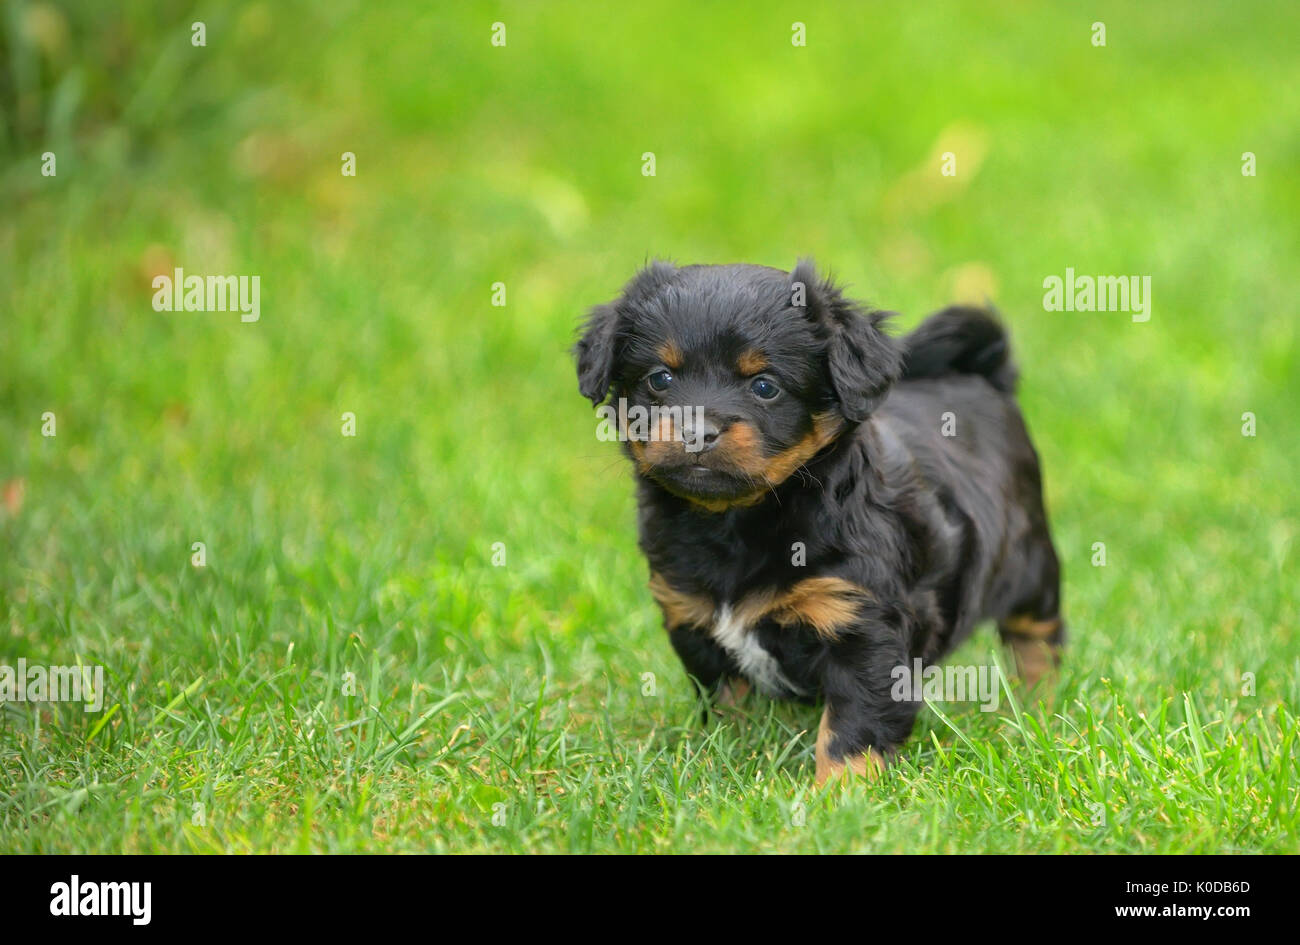 Pekingese grazioso cucciolo di cane sull'erba Foto Stock